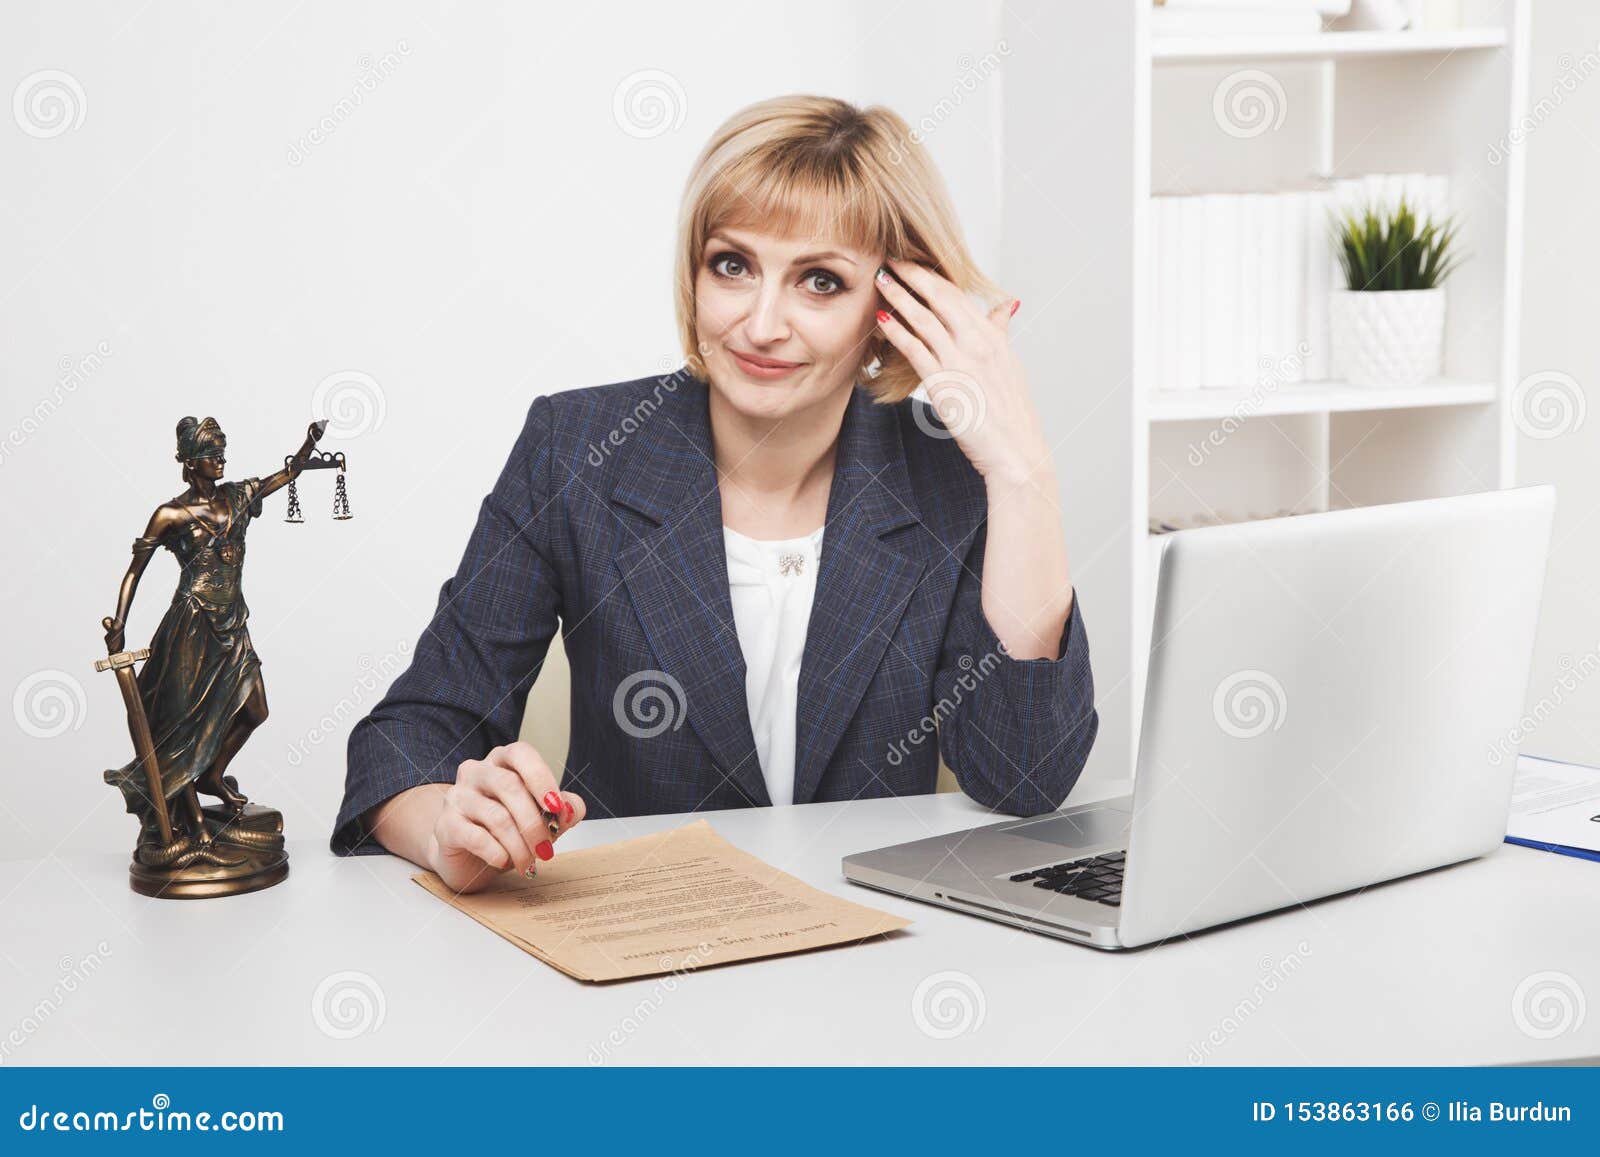 woman jurist working laptop in office .